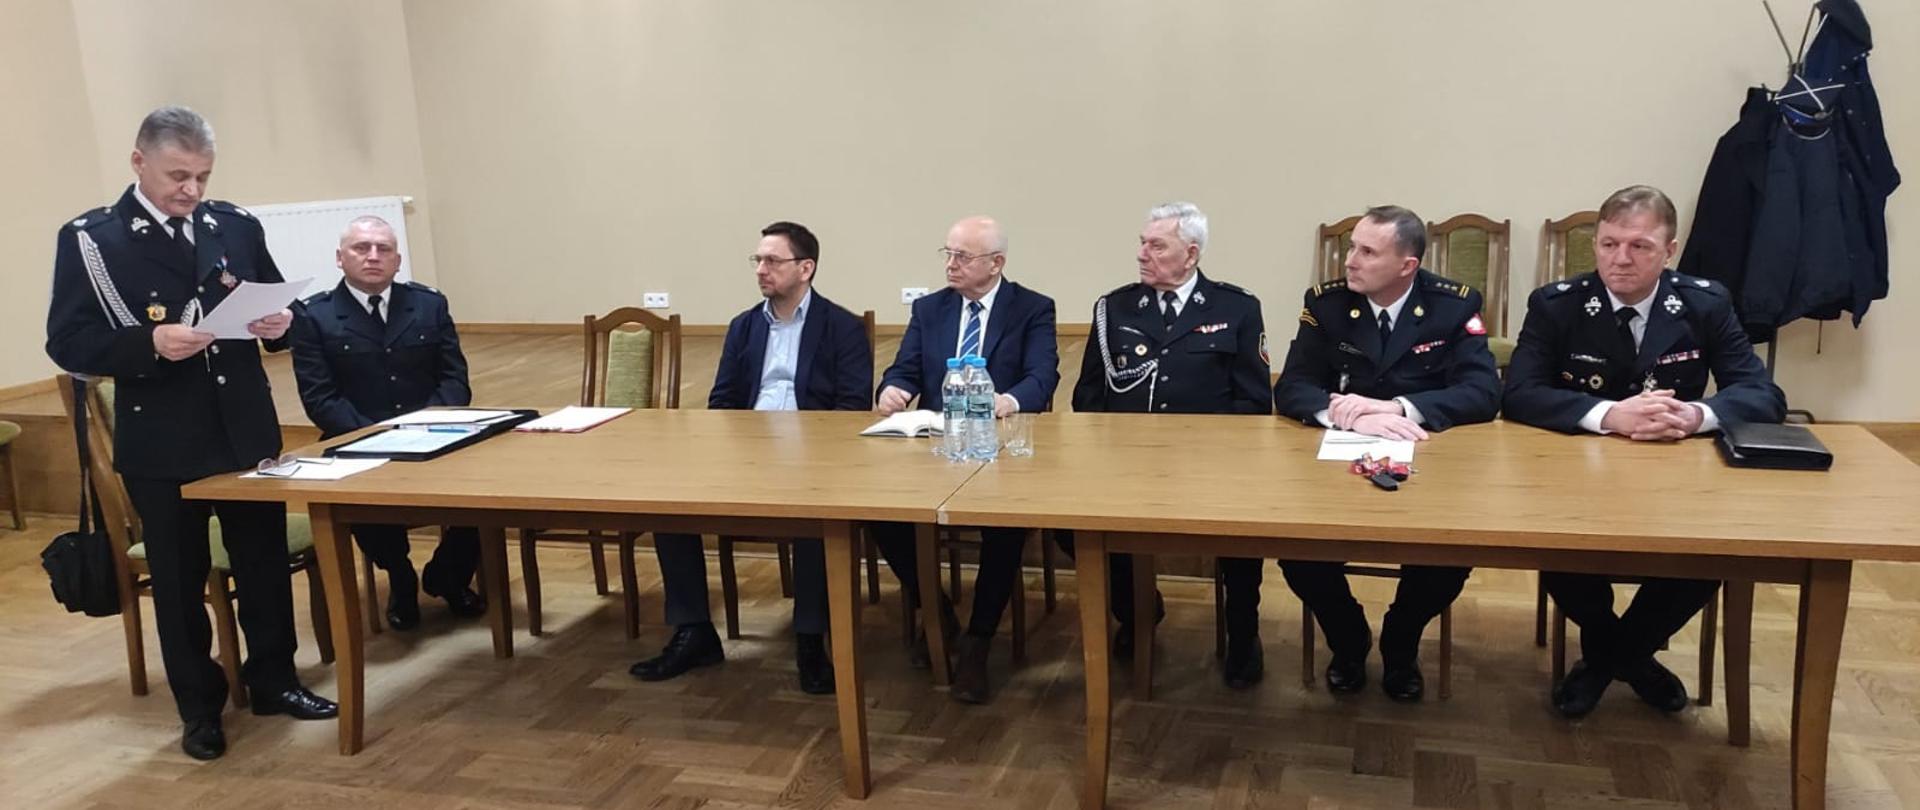 Zdjęcie przedstawia organizatorów i gości siedzący przy stole podczas spotkania sprawozdawczego Ochotniczej Straży Pożarnej w Woli Morawickiej.